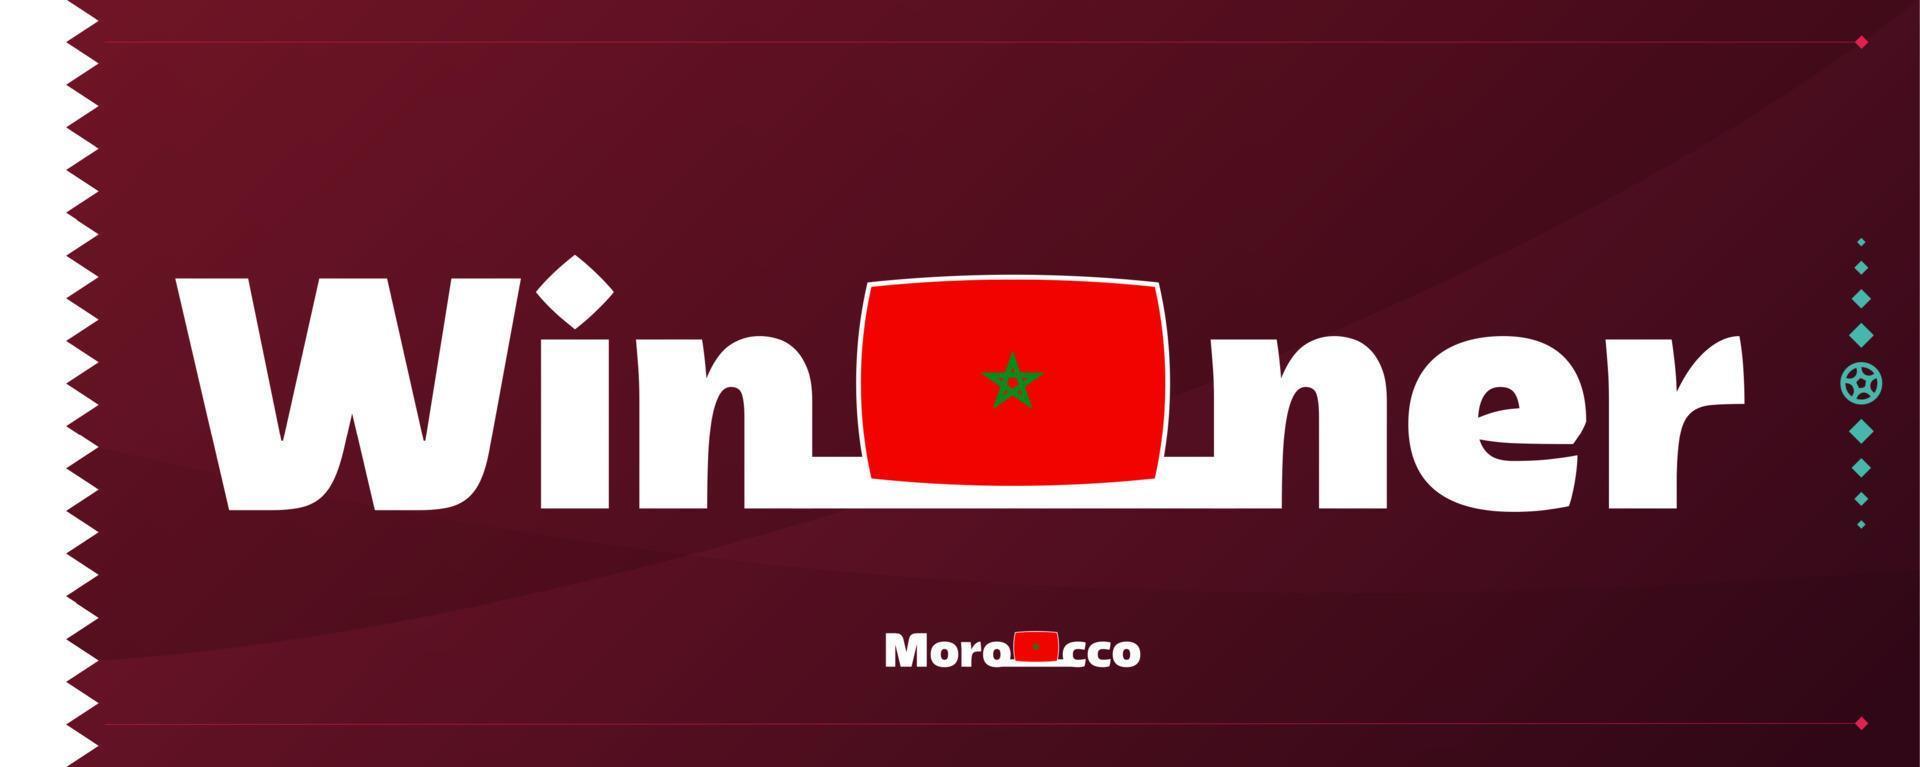 bandeira de Marrocos com slogan vencedor no fundo do futebol. ilustração vetorial de torneio de futebol mundial 2022 vetor